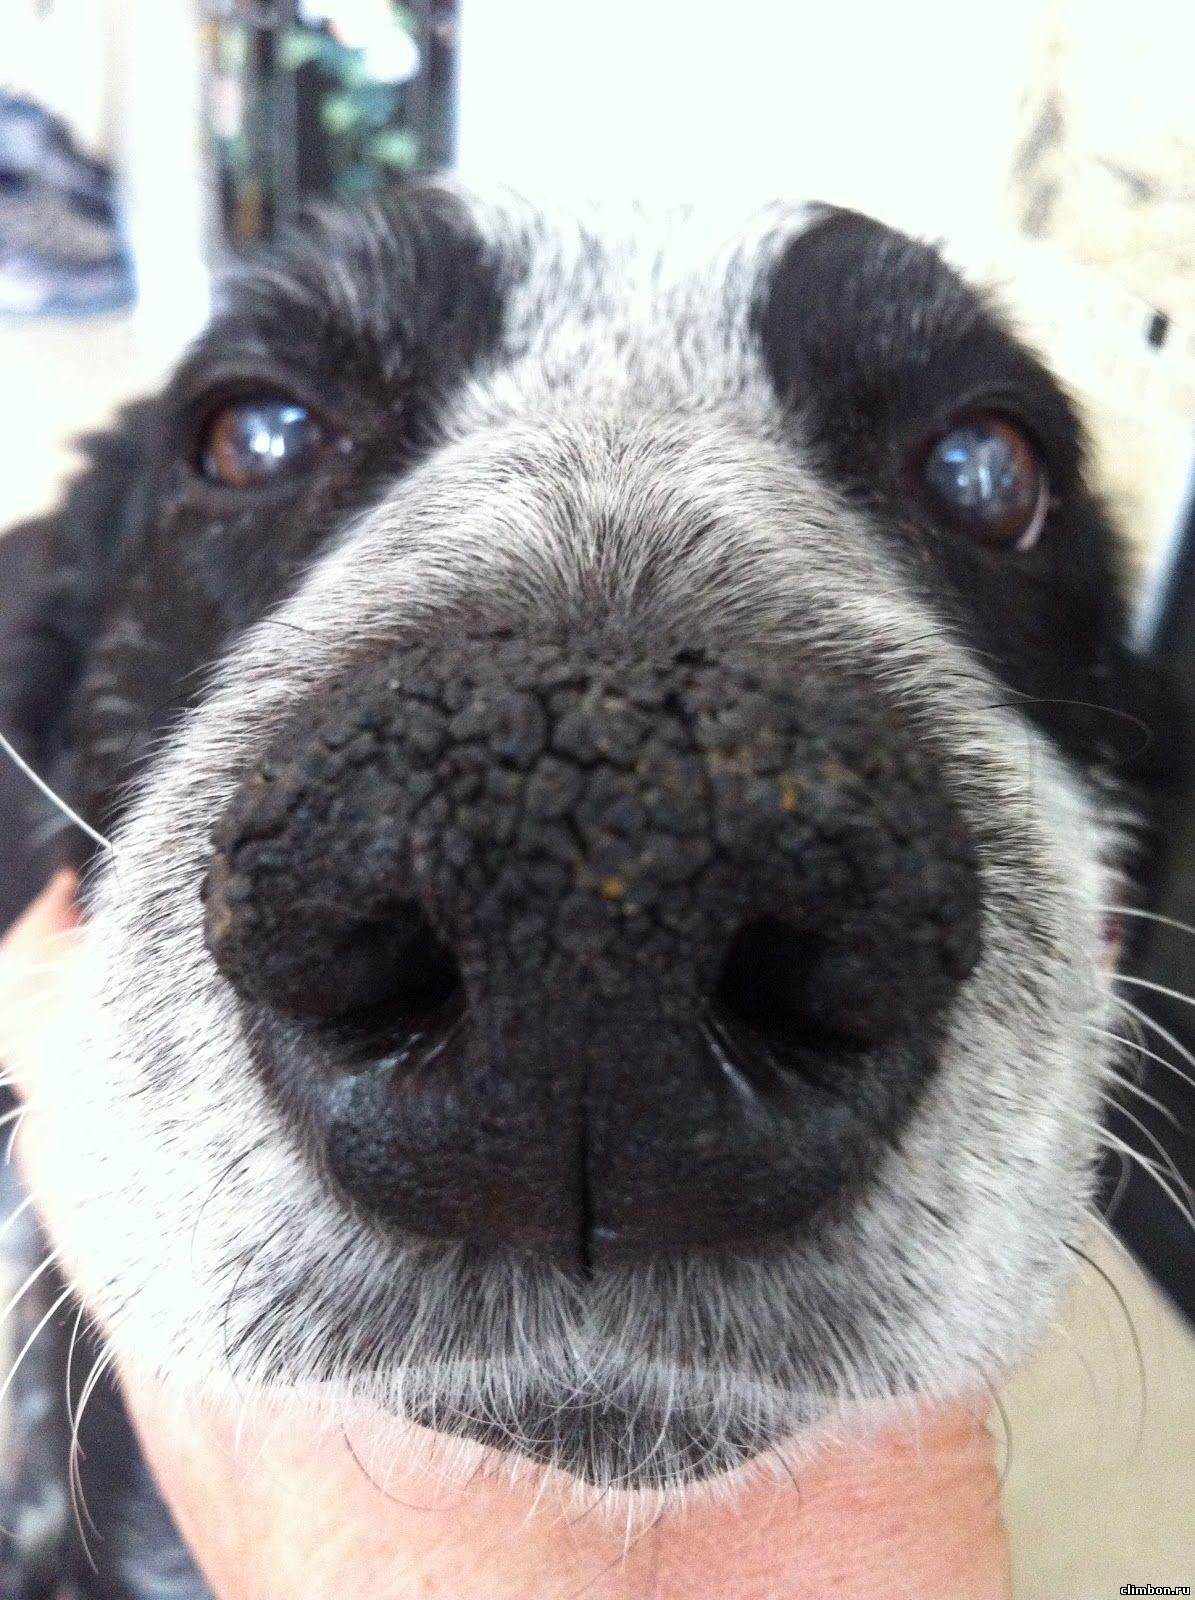 Почему у собаки мокрый нос? – почемуха.ру ответы на вопросы.